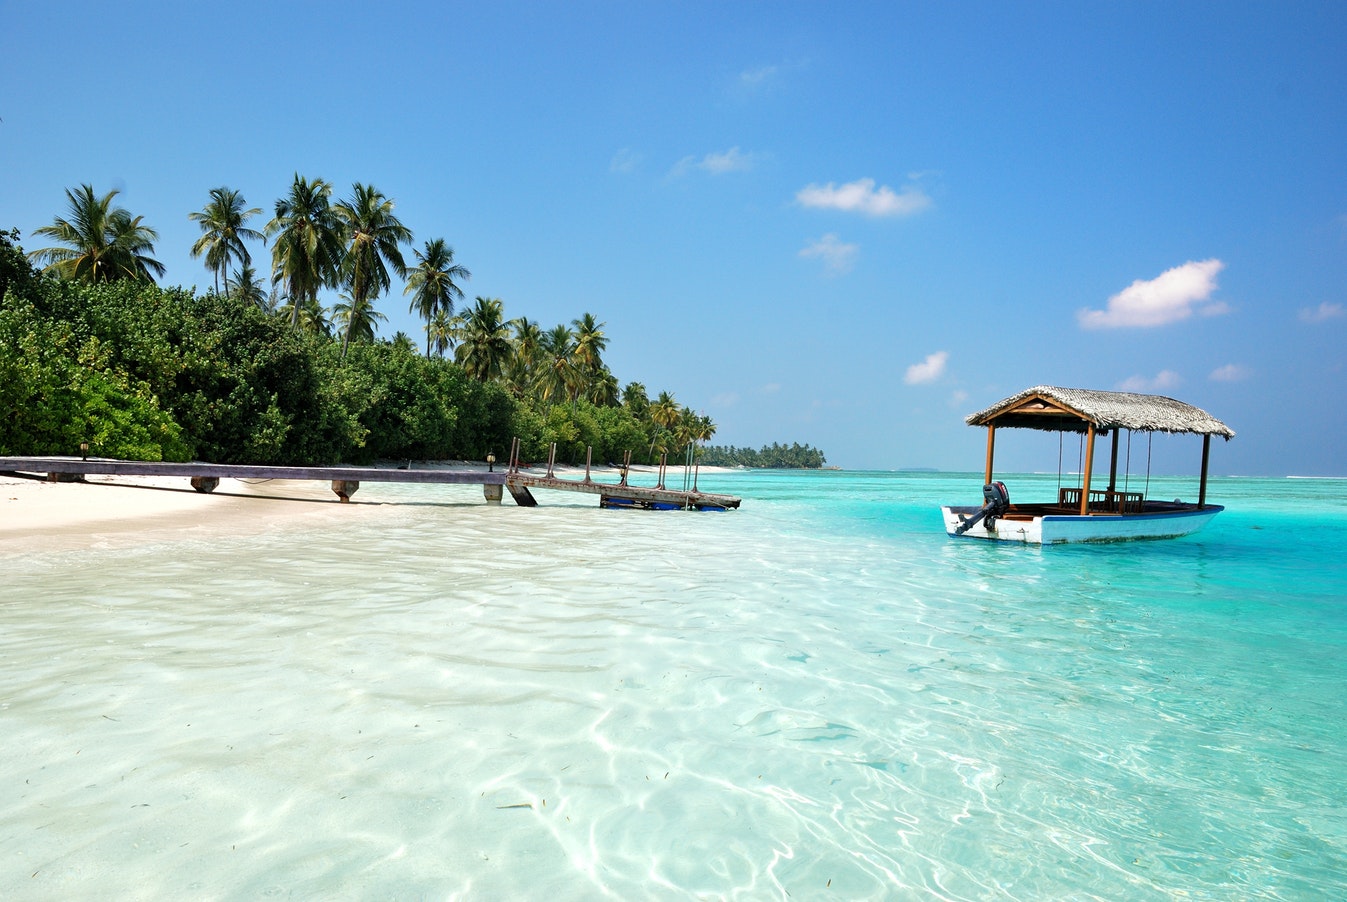 Lune de miel destinations prisées + voyages de noces où aller + destinations populaires + Maldives